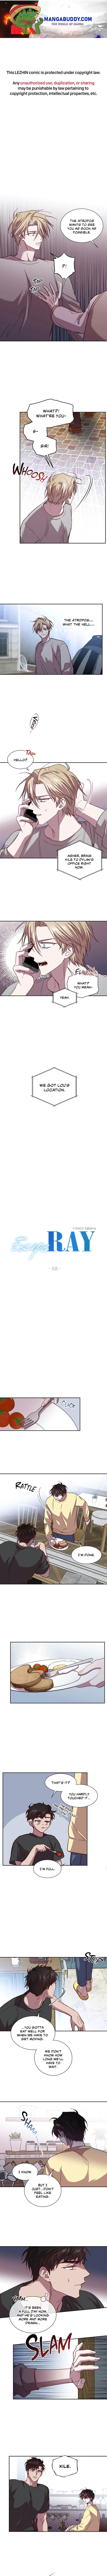 Escape, Ray - Page 1